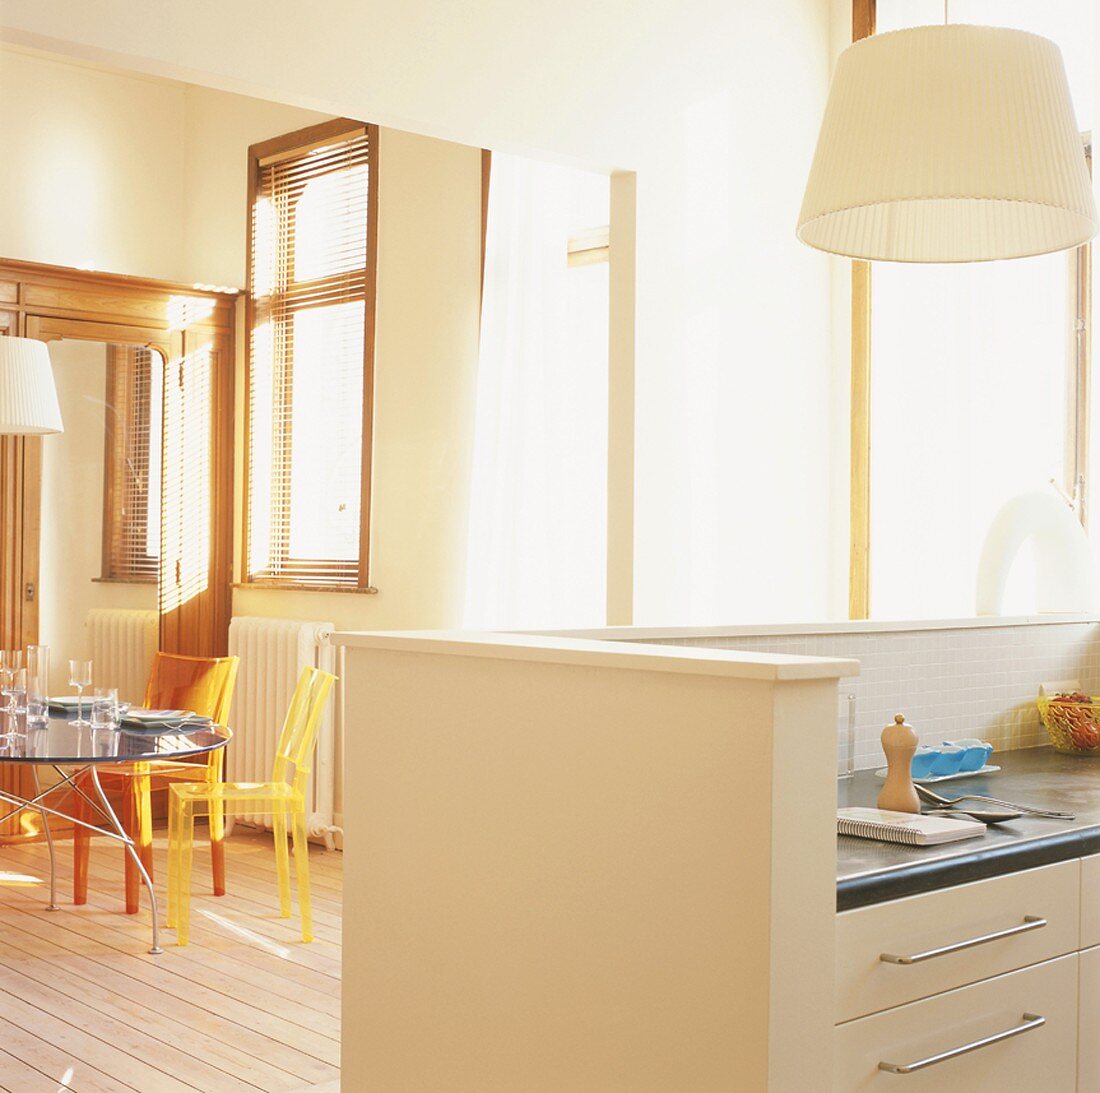 Ein heller Raum mit eleganter Küchentheke und bunten Plexiglasstühlen an einem Glastisch